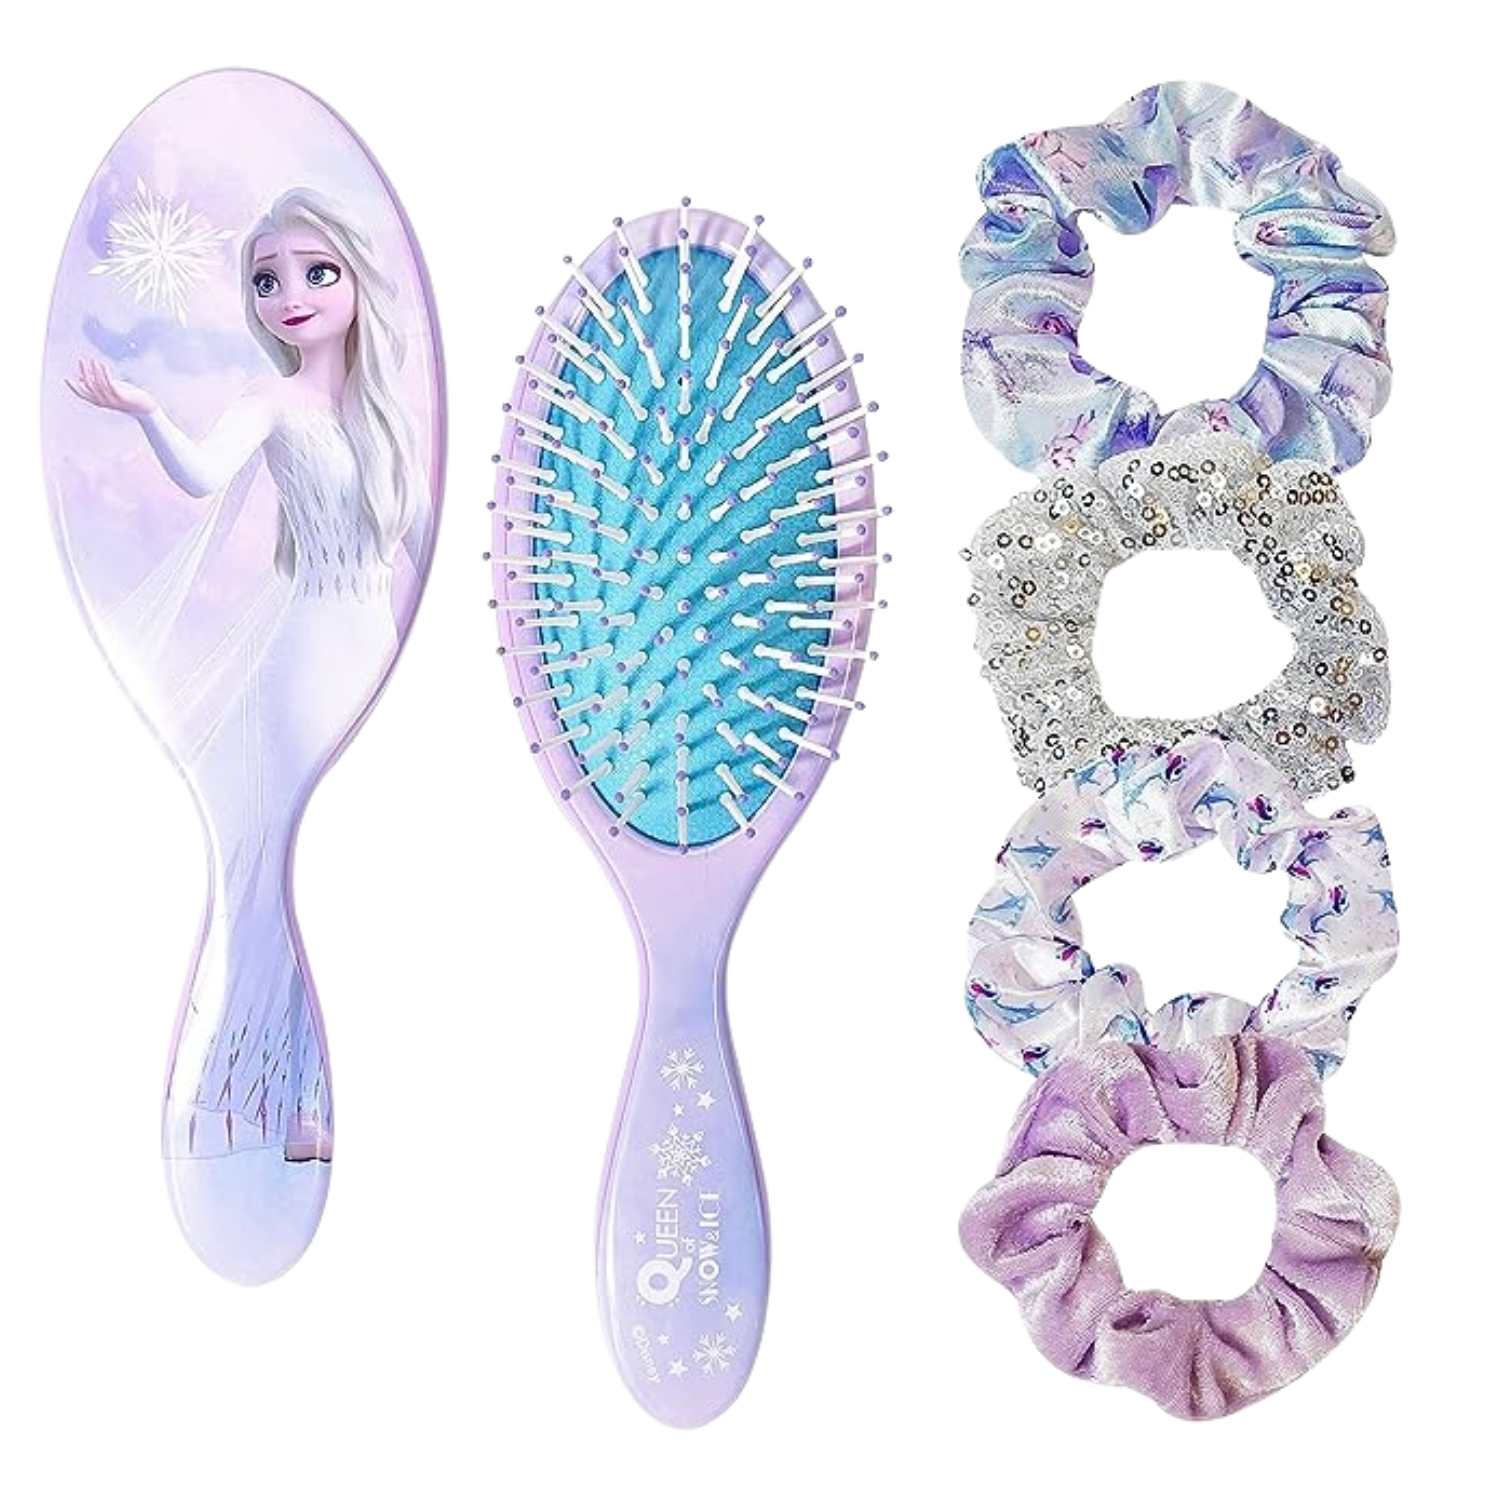 Questa immagine mostra l'immagine di una spazzola a tema Frozen e quattro fasce per capelli.